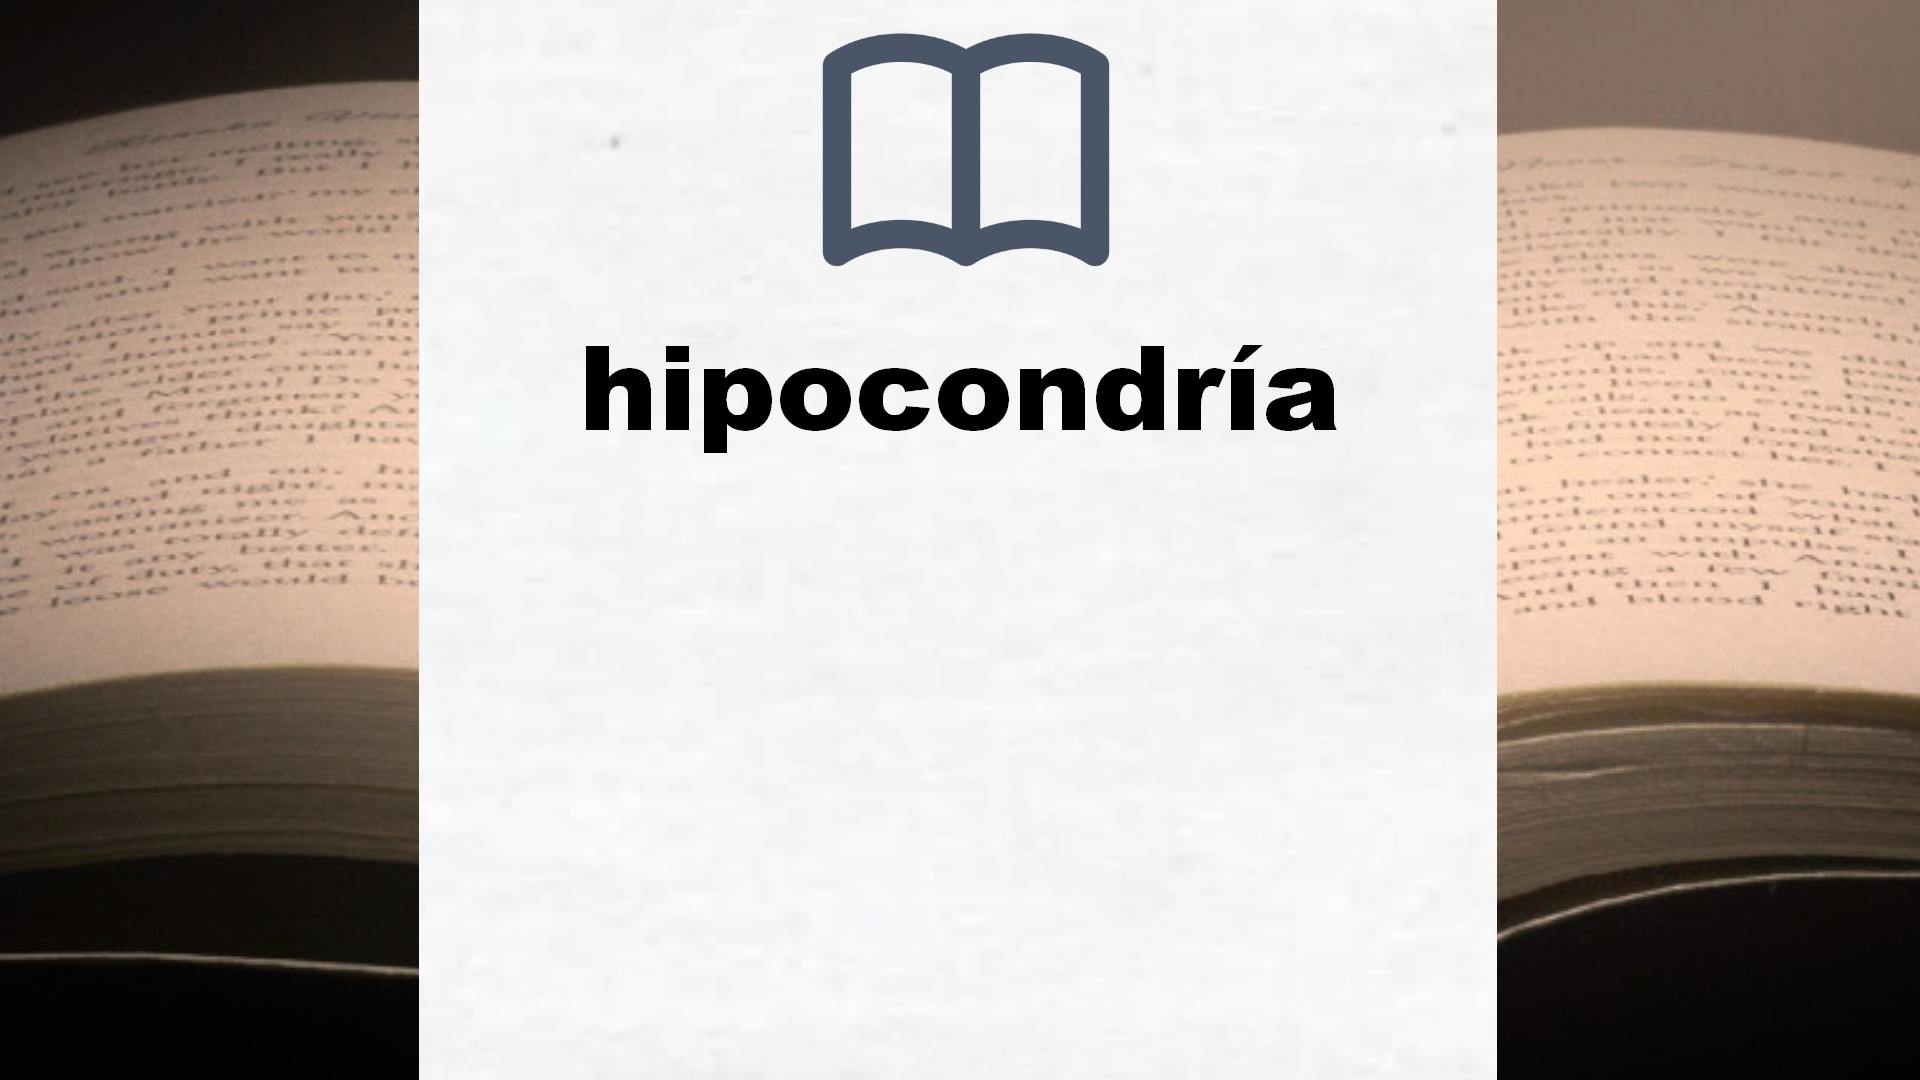 Libros sobre hipocondría